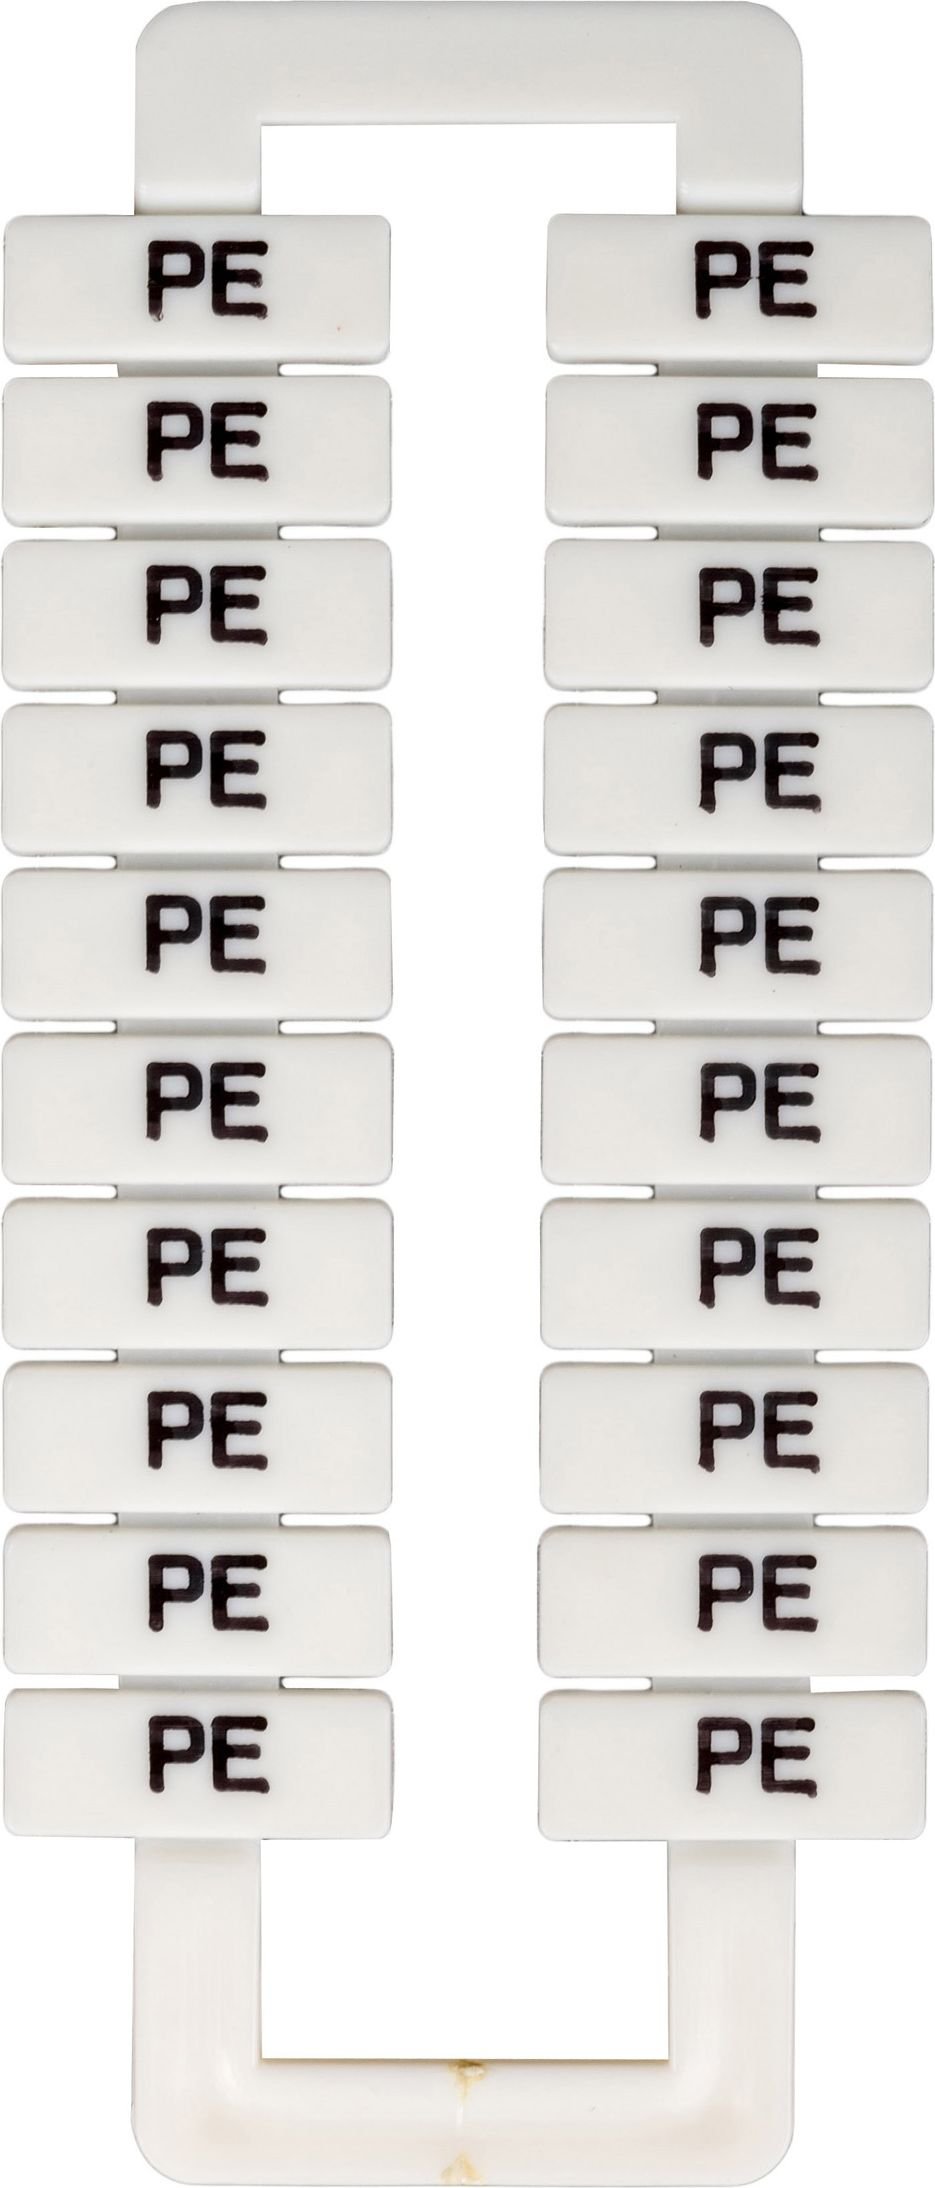 Marker pentru conectori șină 2,5-70mm2 / PE / 20pcs alb. (43192)